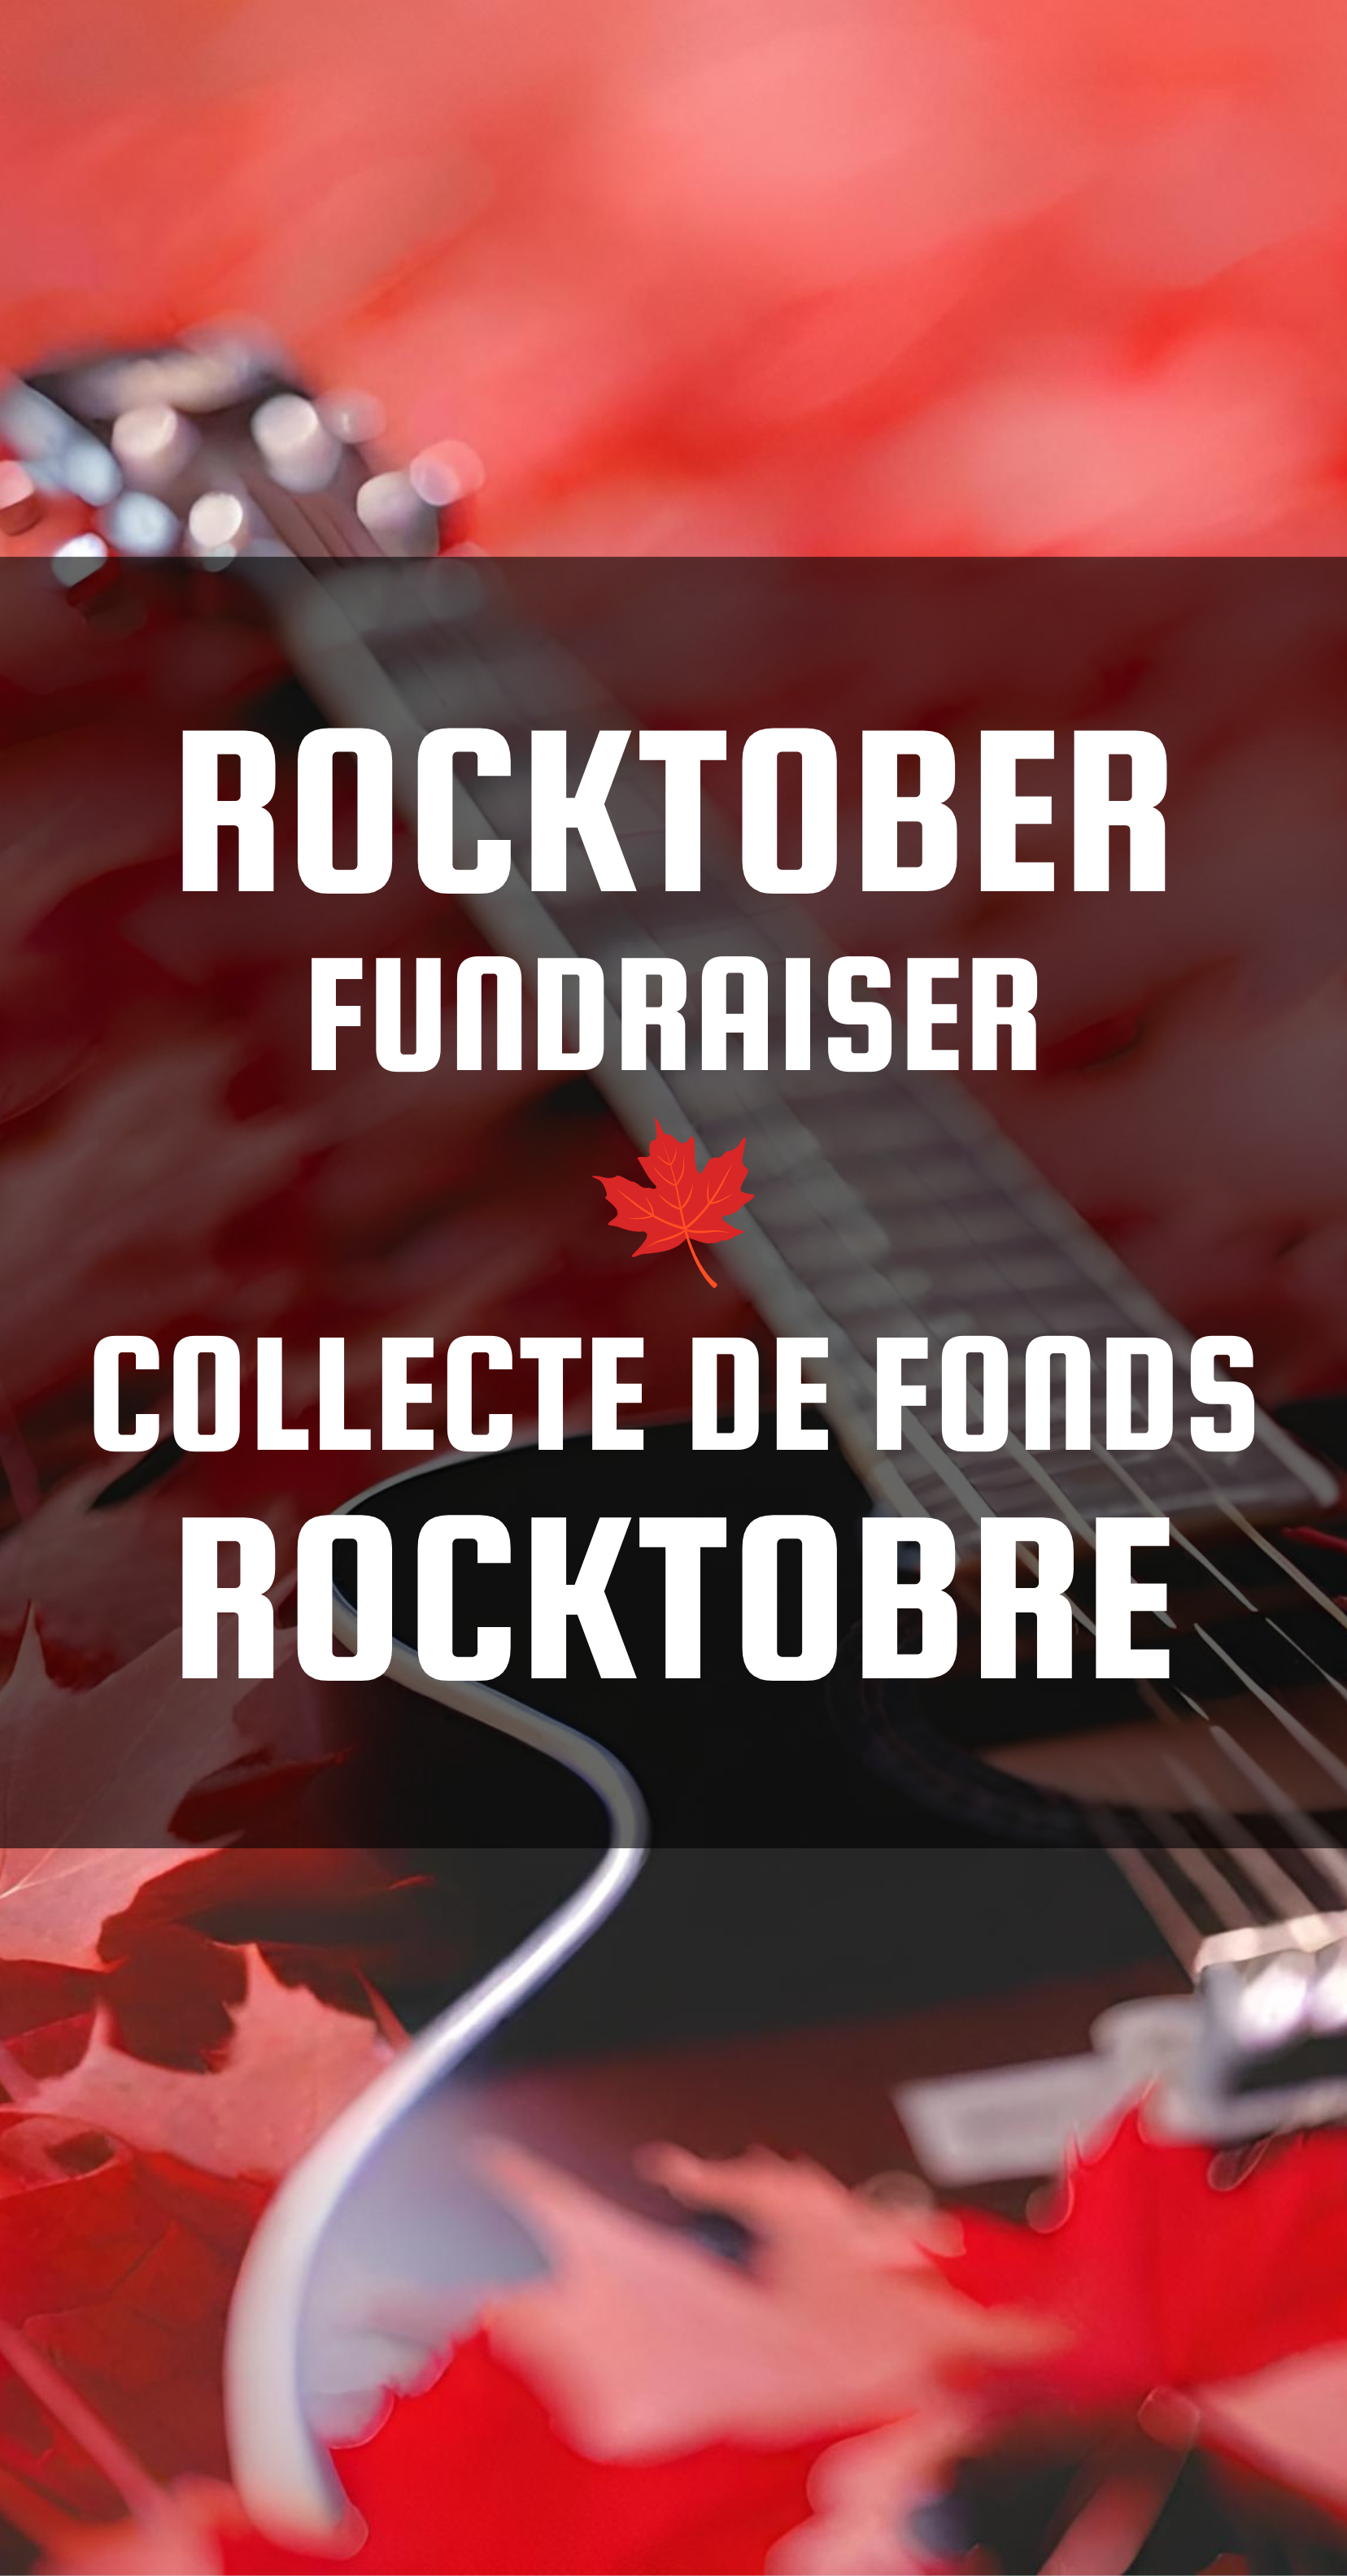 Rocktober Fundraiser